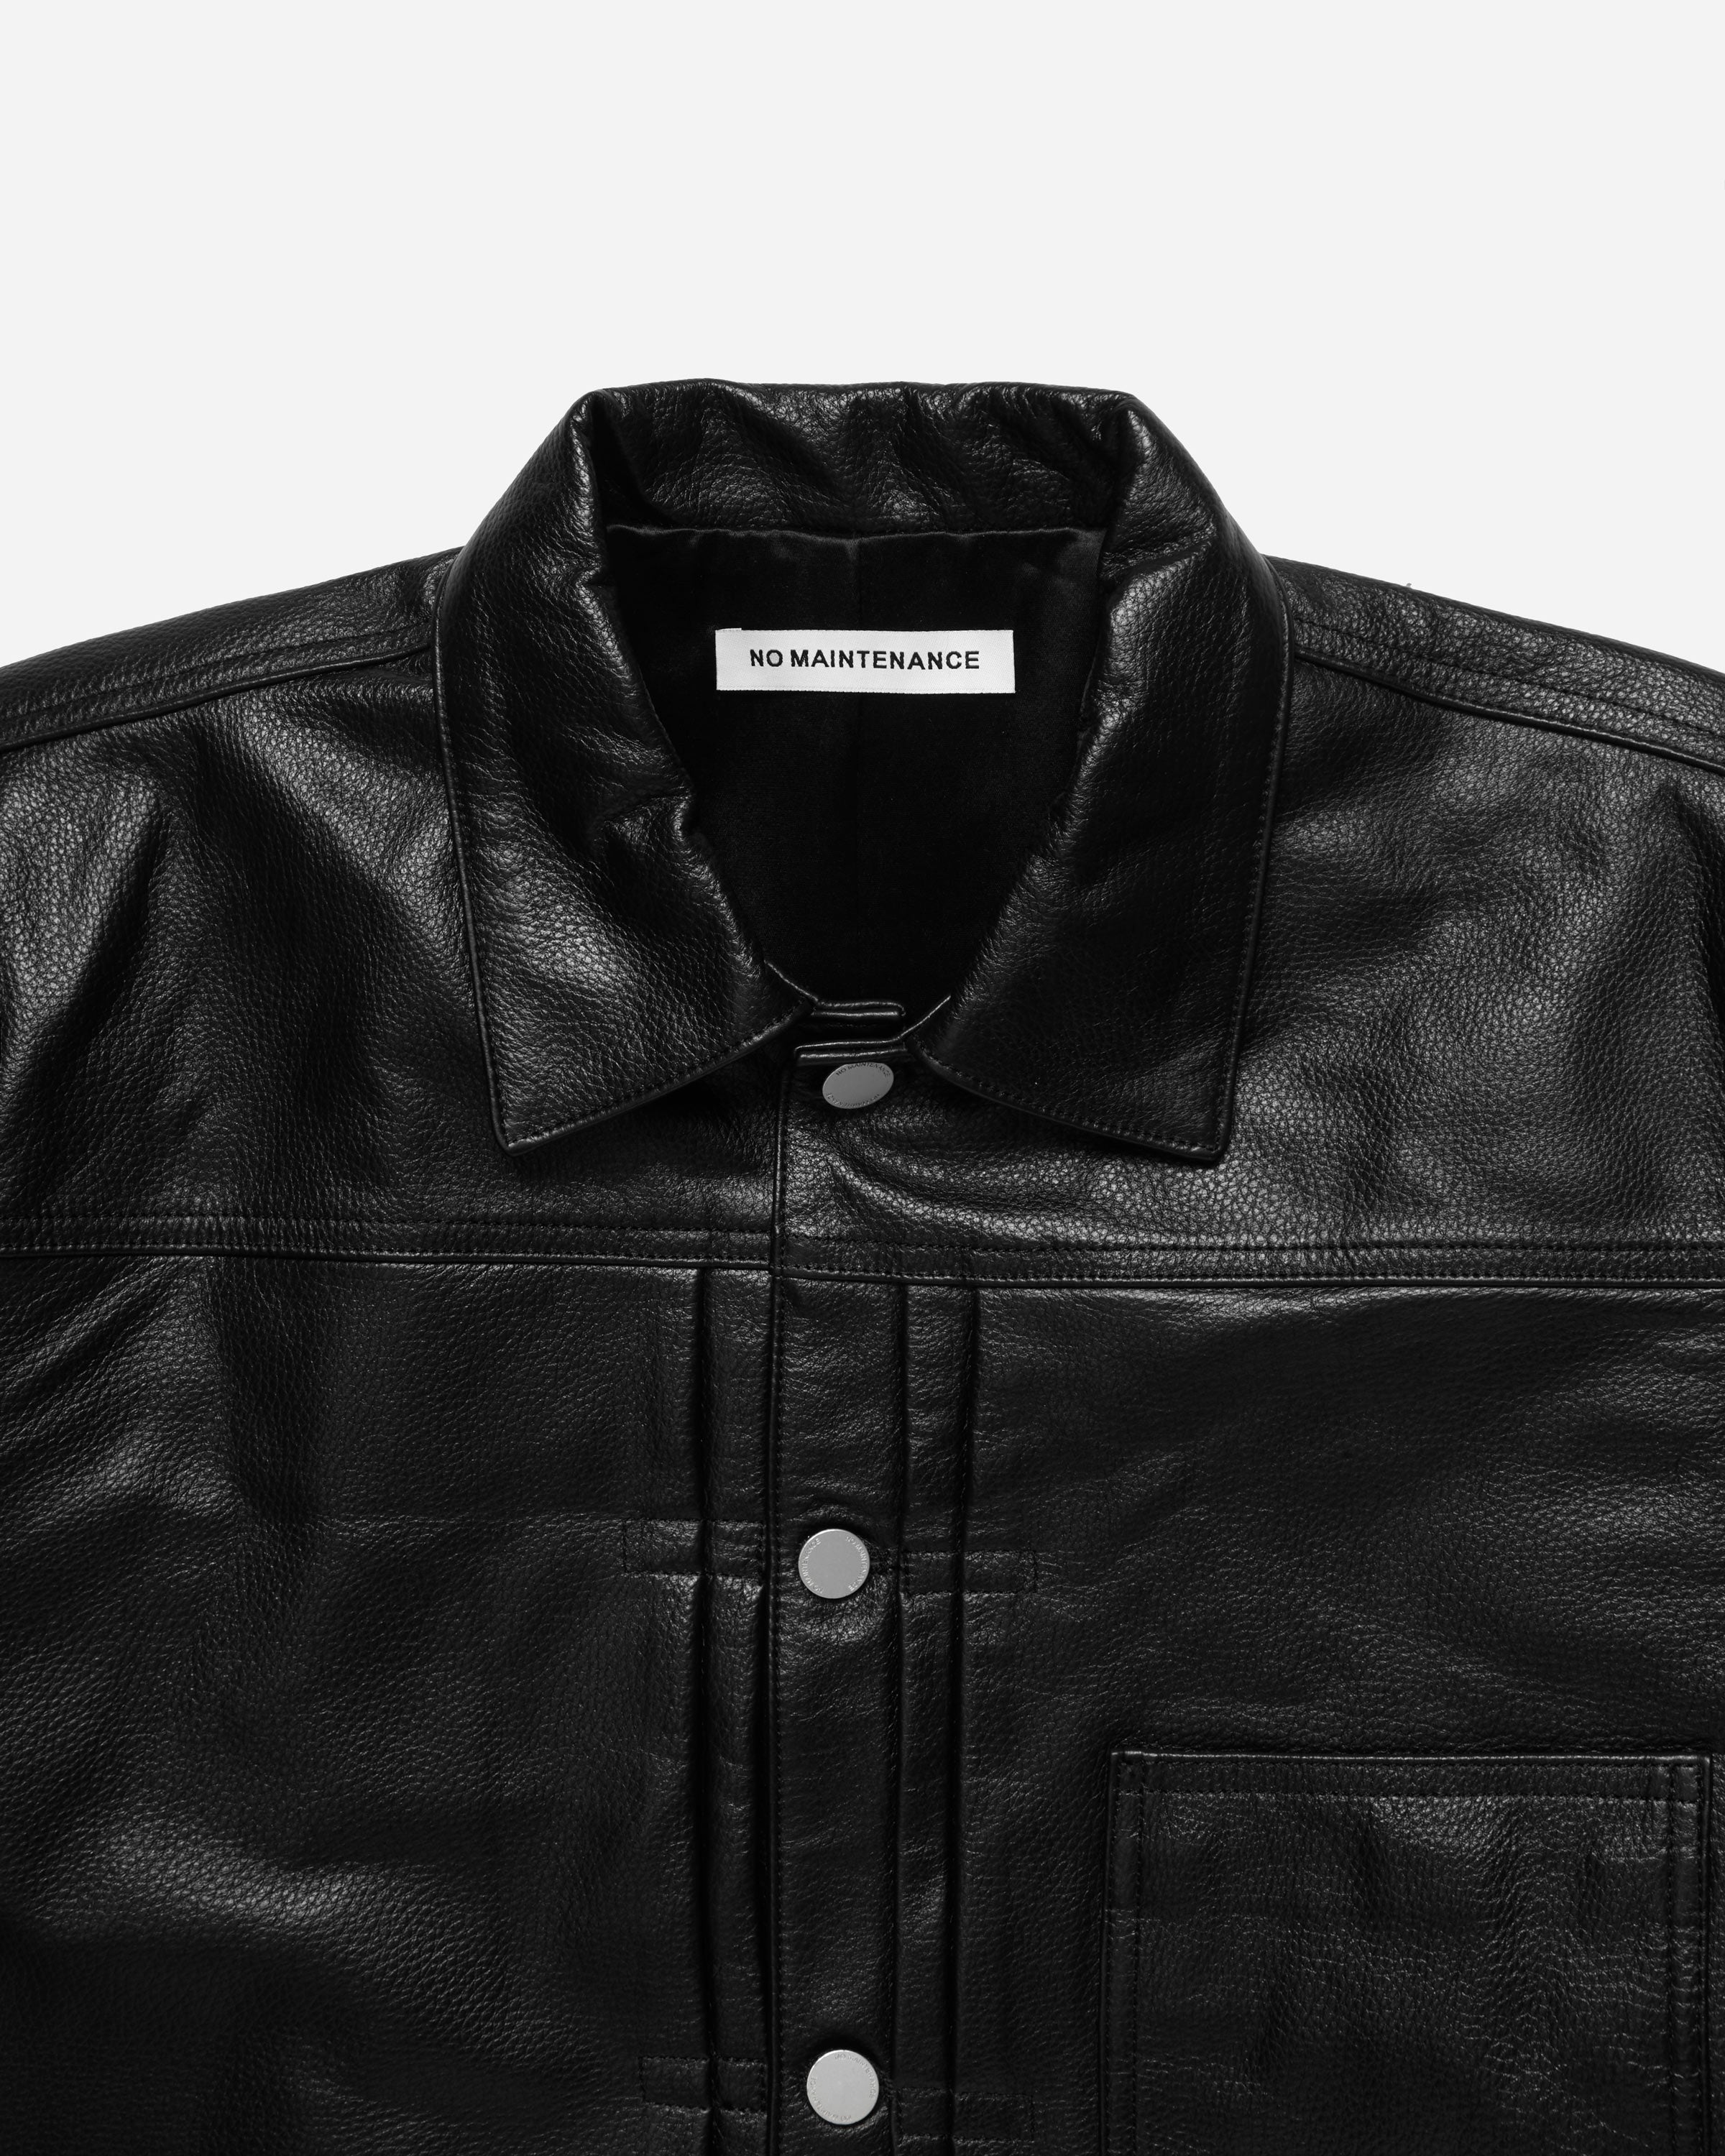 Type One Leather Jacket